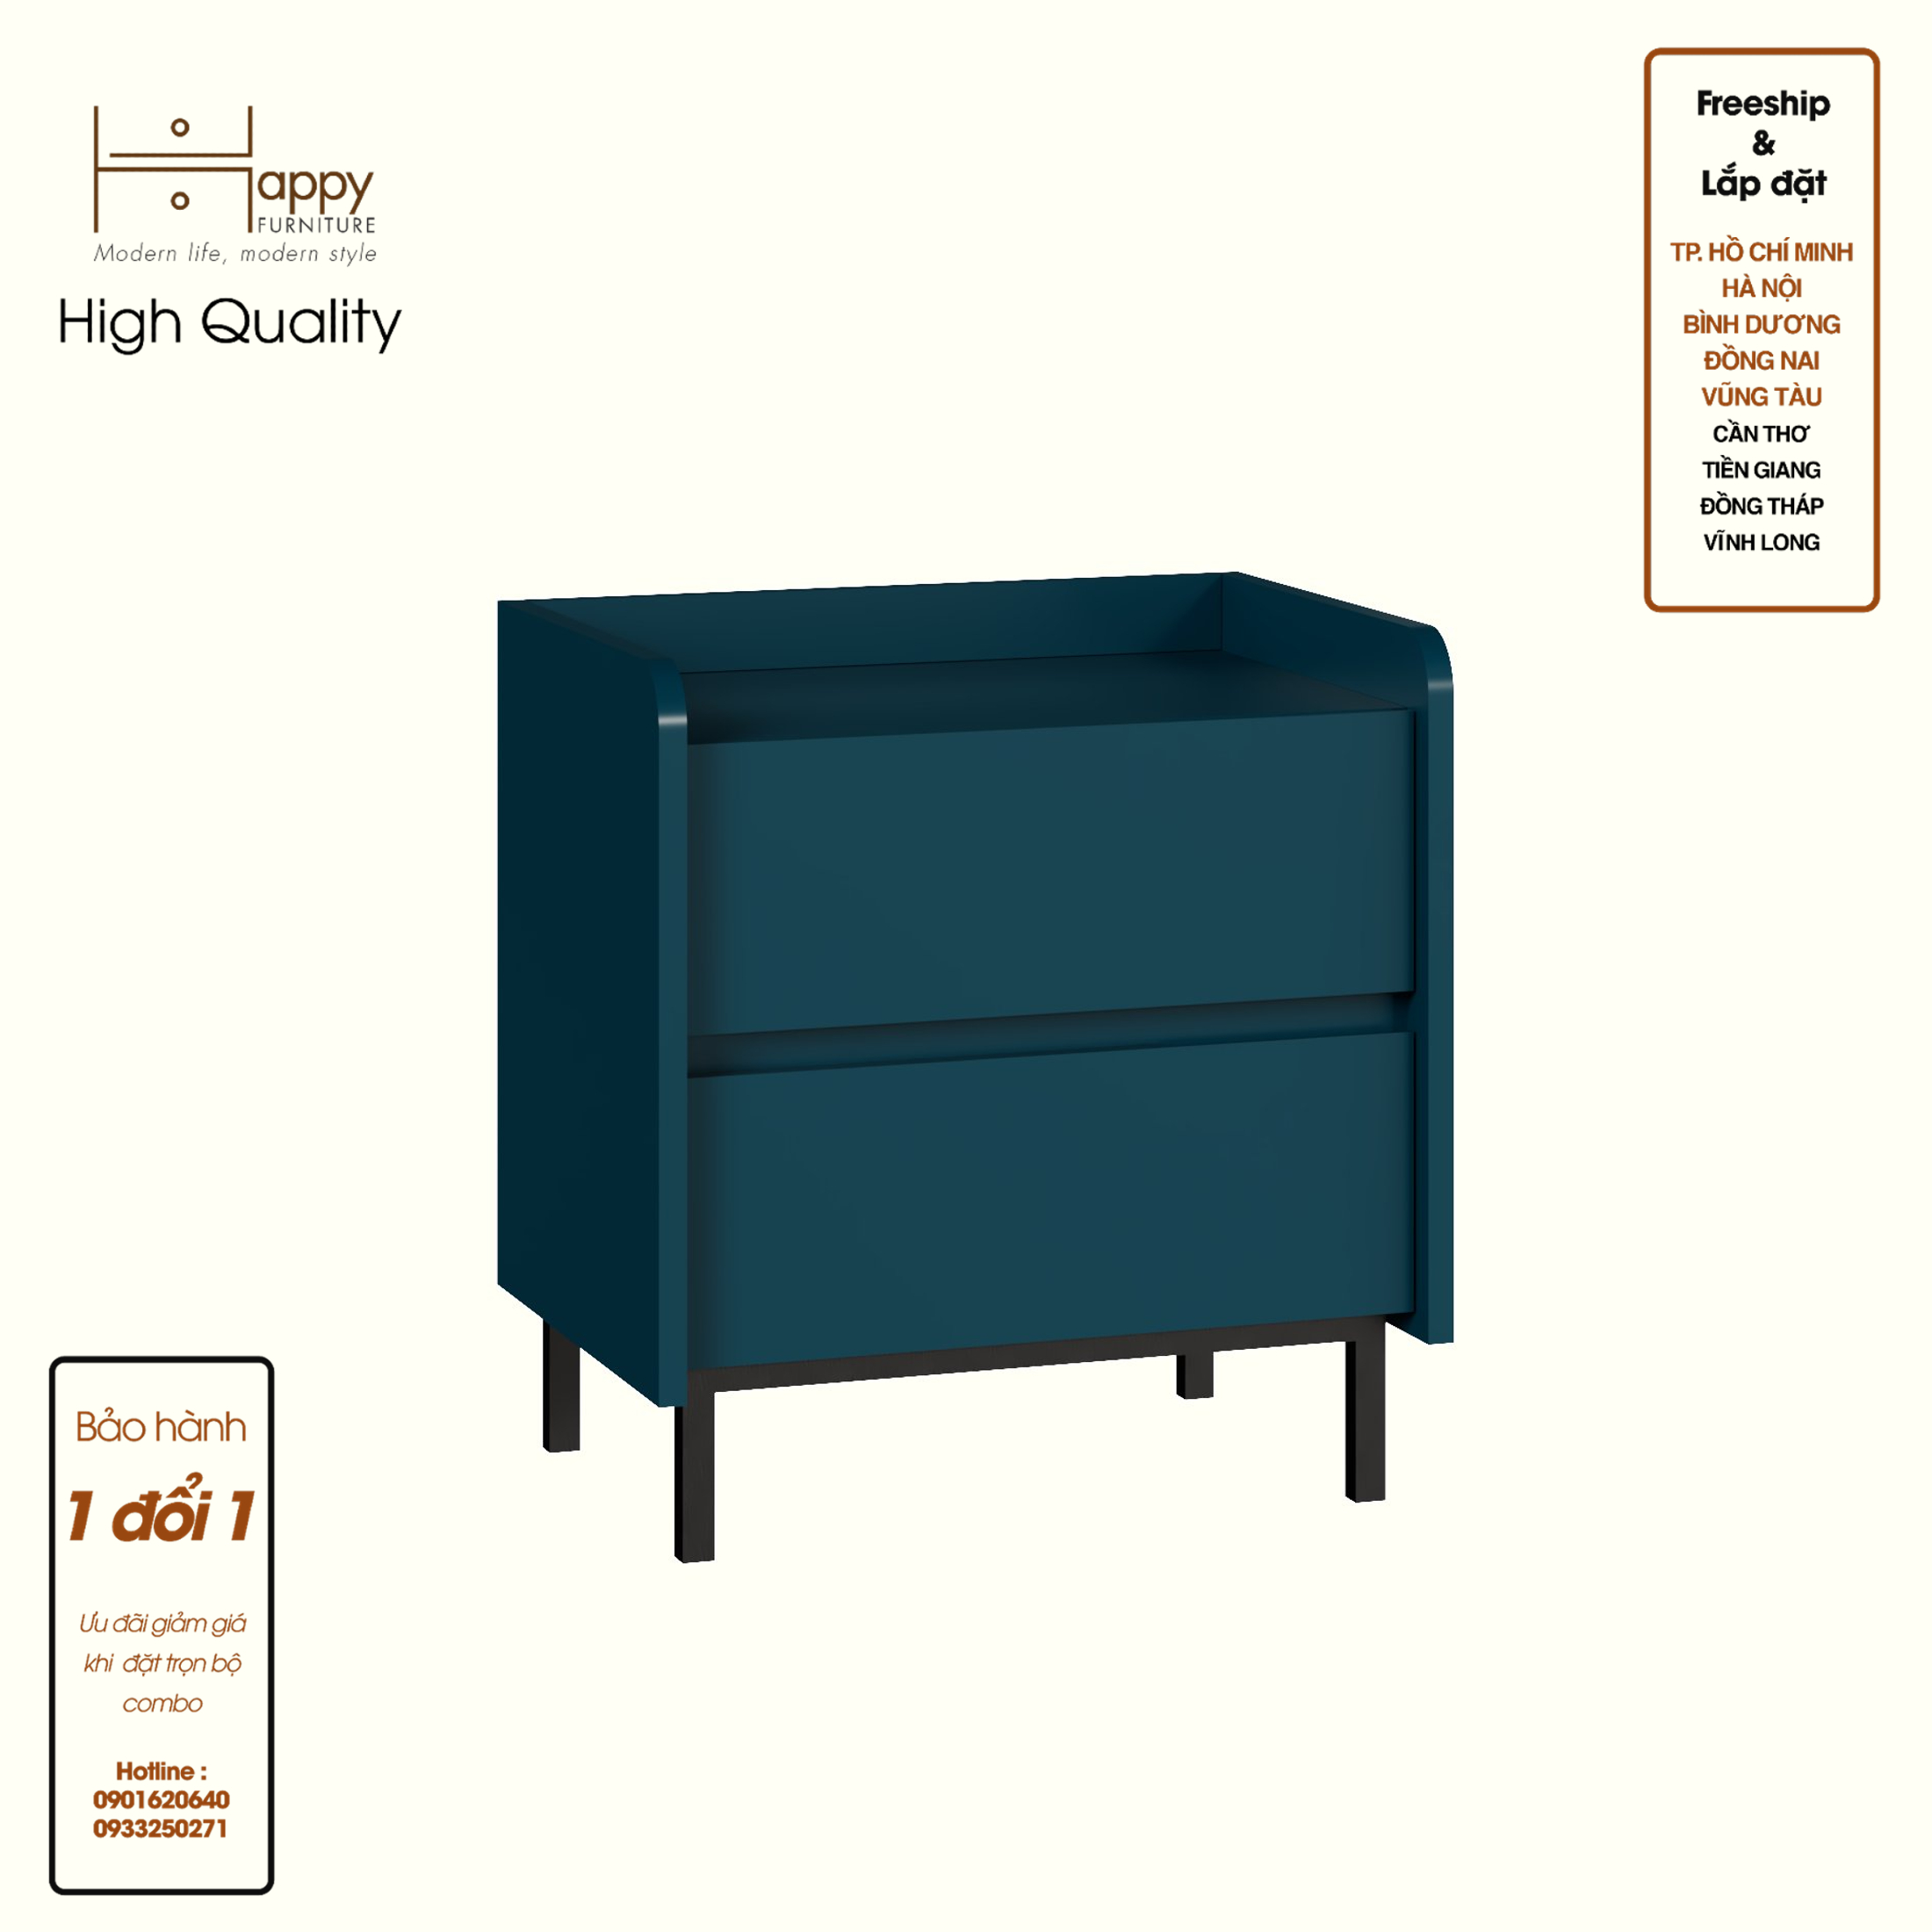 [Happy Home Furniture] LAVIA, Táp đầu giường 2 ngăn kéo - chân sắt, 50cm x 40cm x 54cm ( DxRxC), THK_153